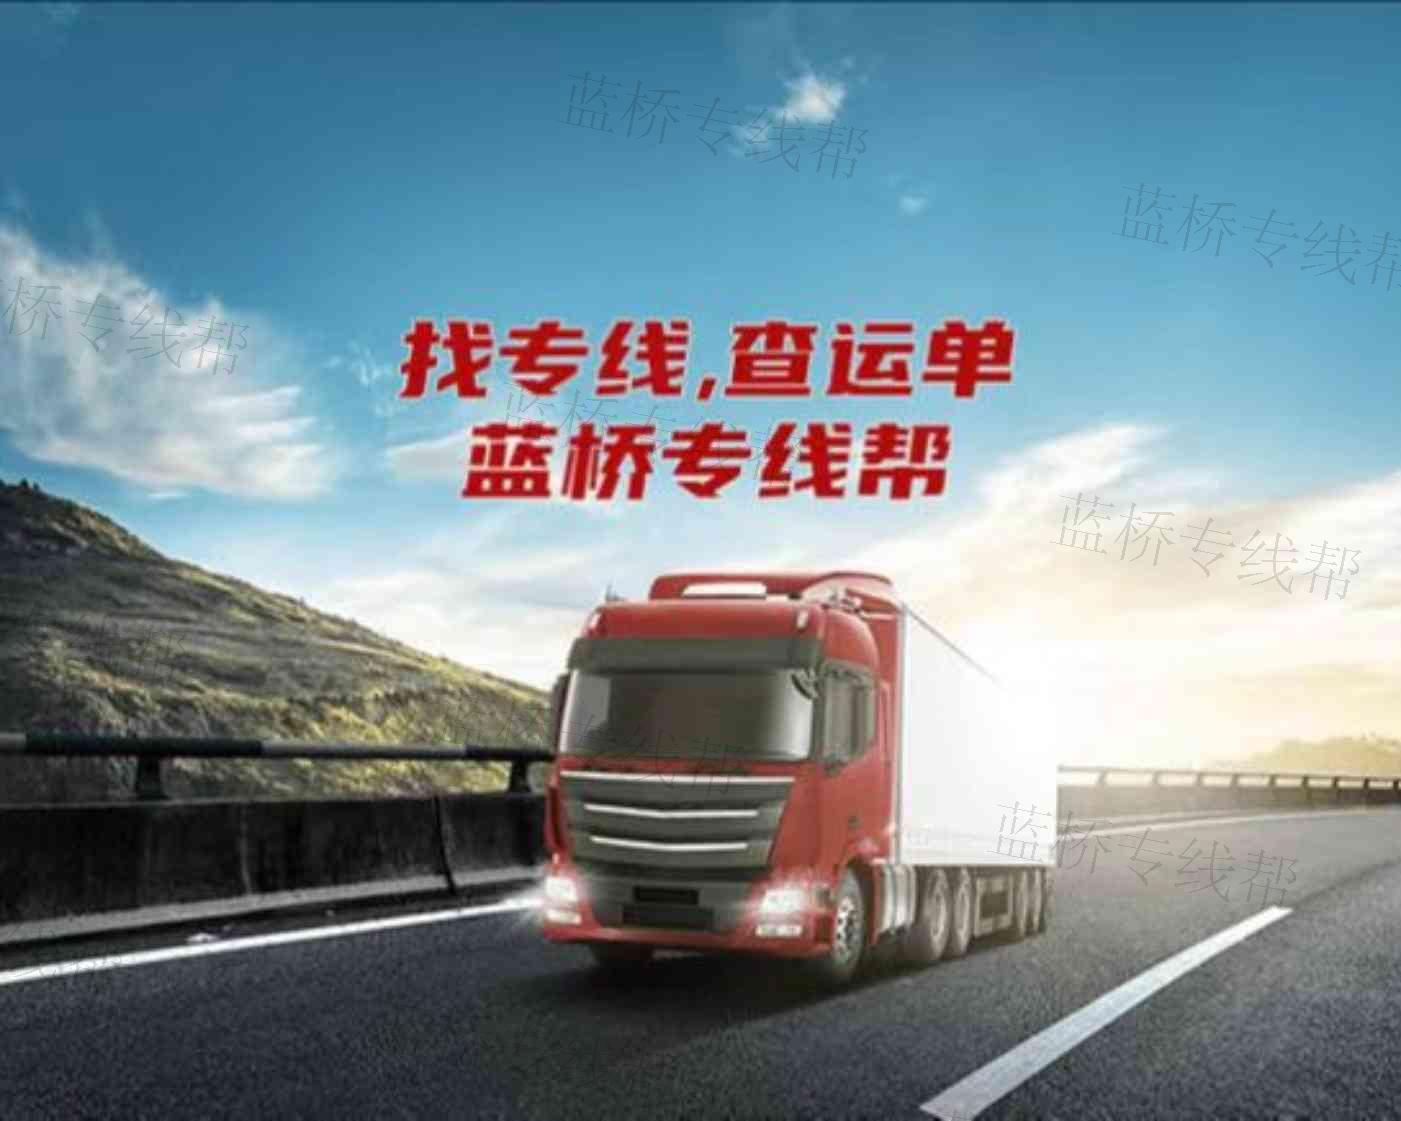 北京呼伦贝尔兴运达物流有限公司